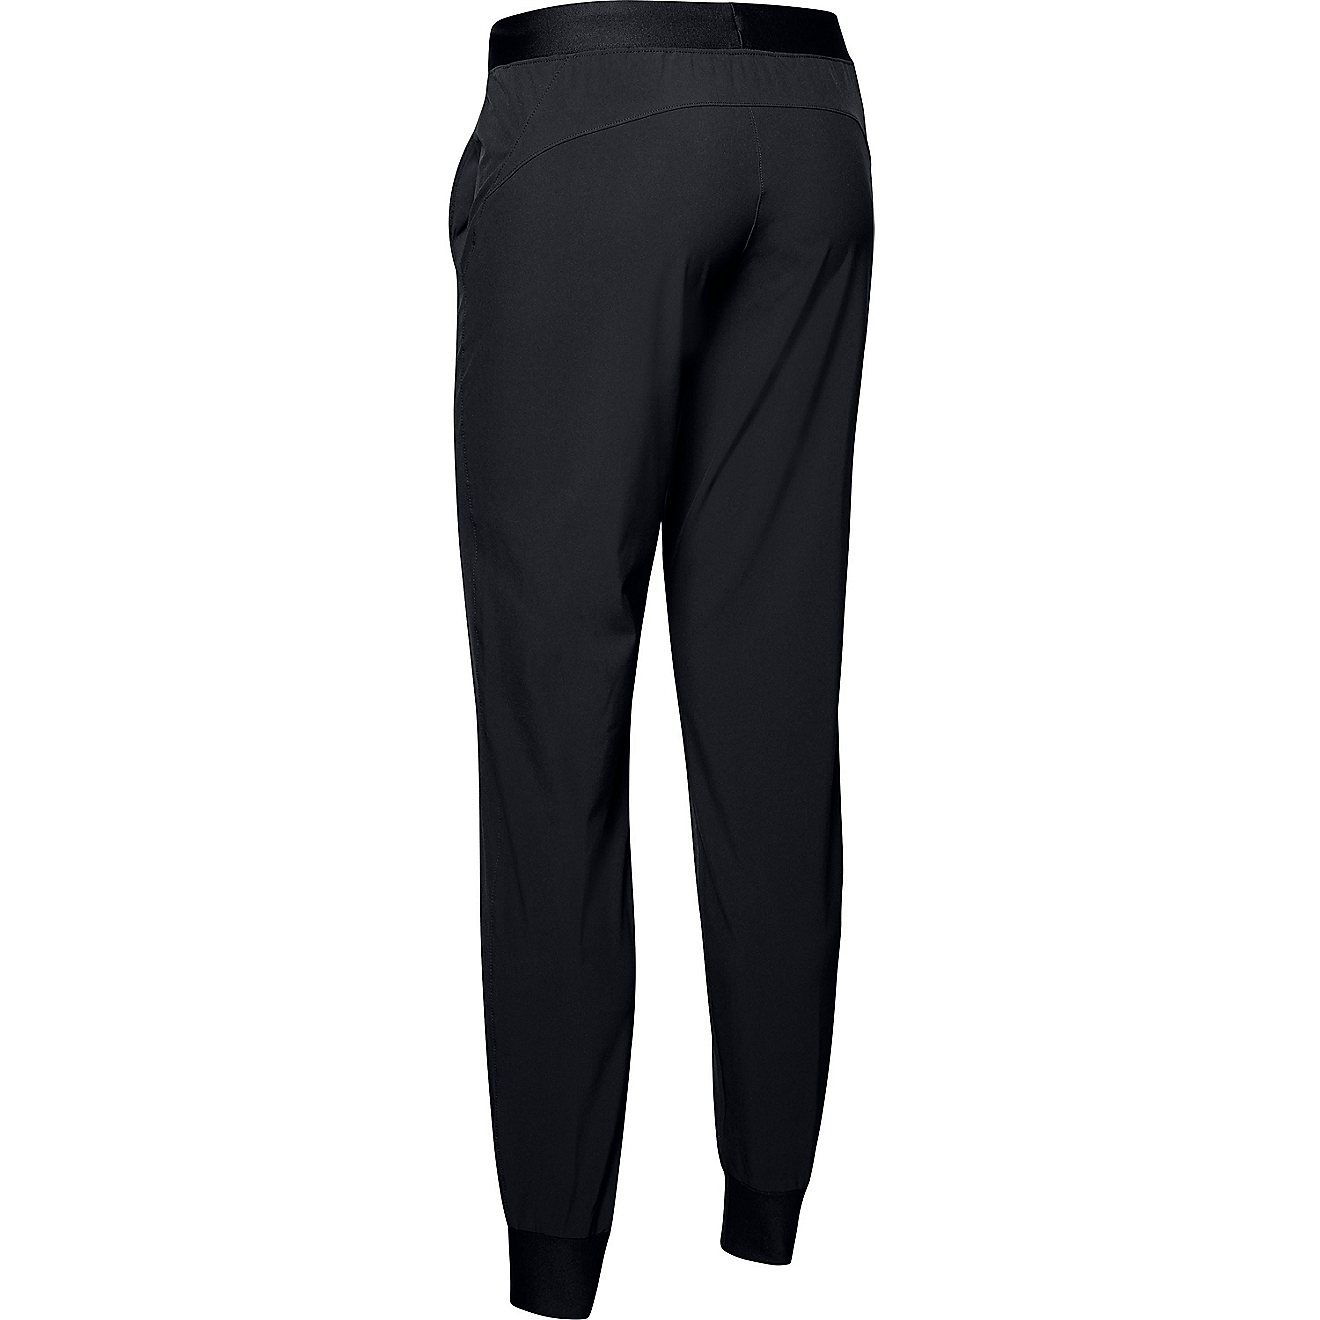 Under Armour Women's Armour Sport Woven Pants - Black/Pink - Hibbett